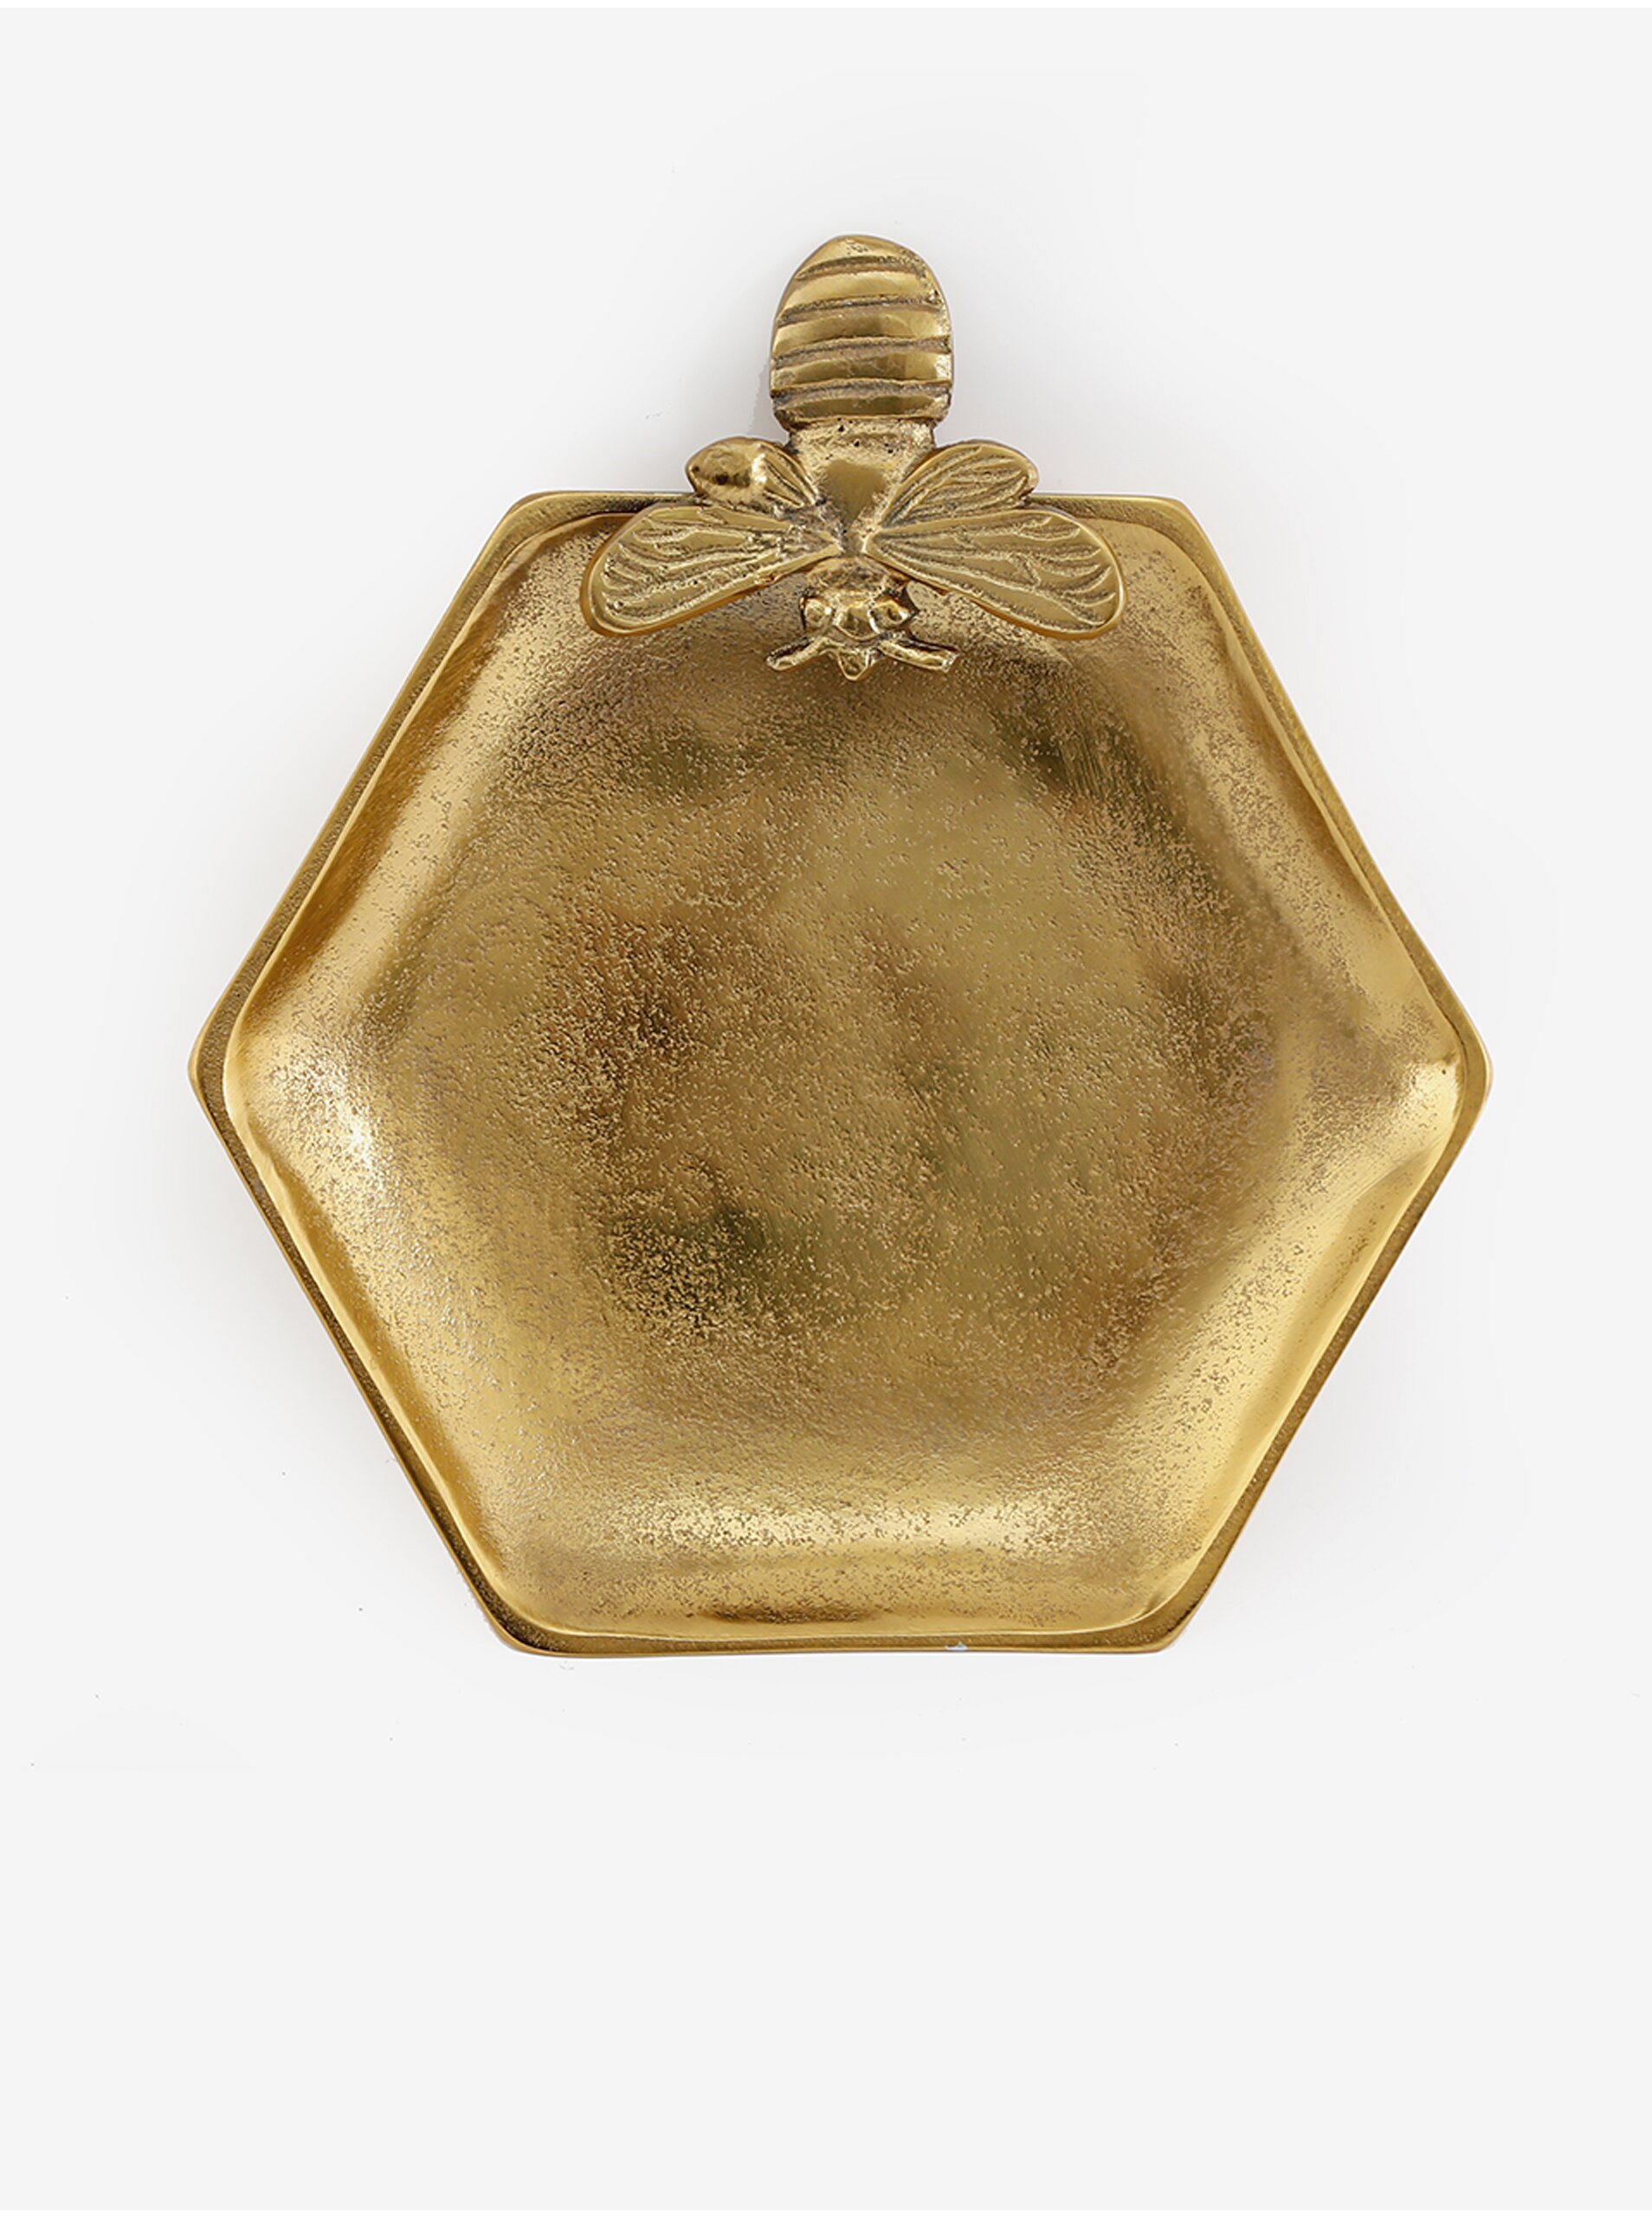 Lacno Tepaný servírovací talíř ve zlaté barvě a tvare včelieho plástu SIFCON malý